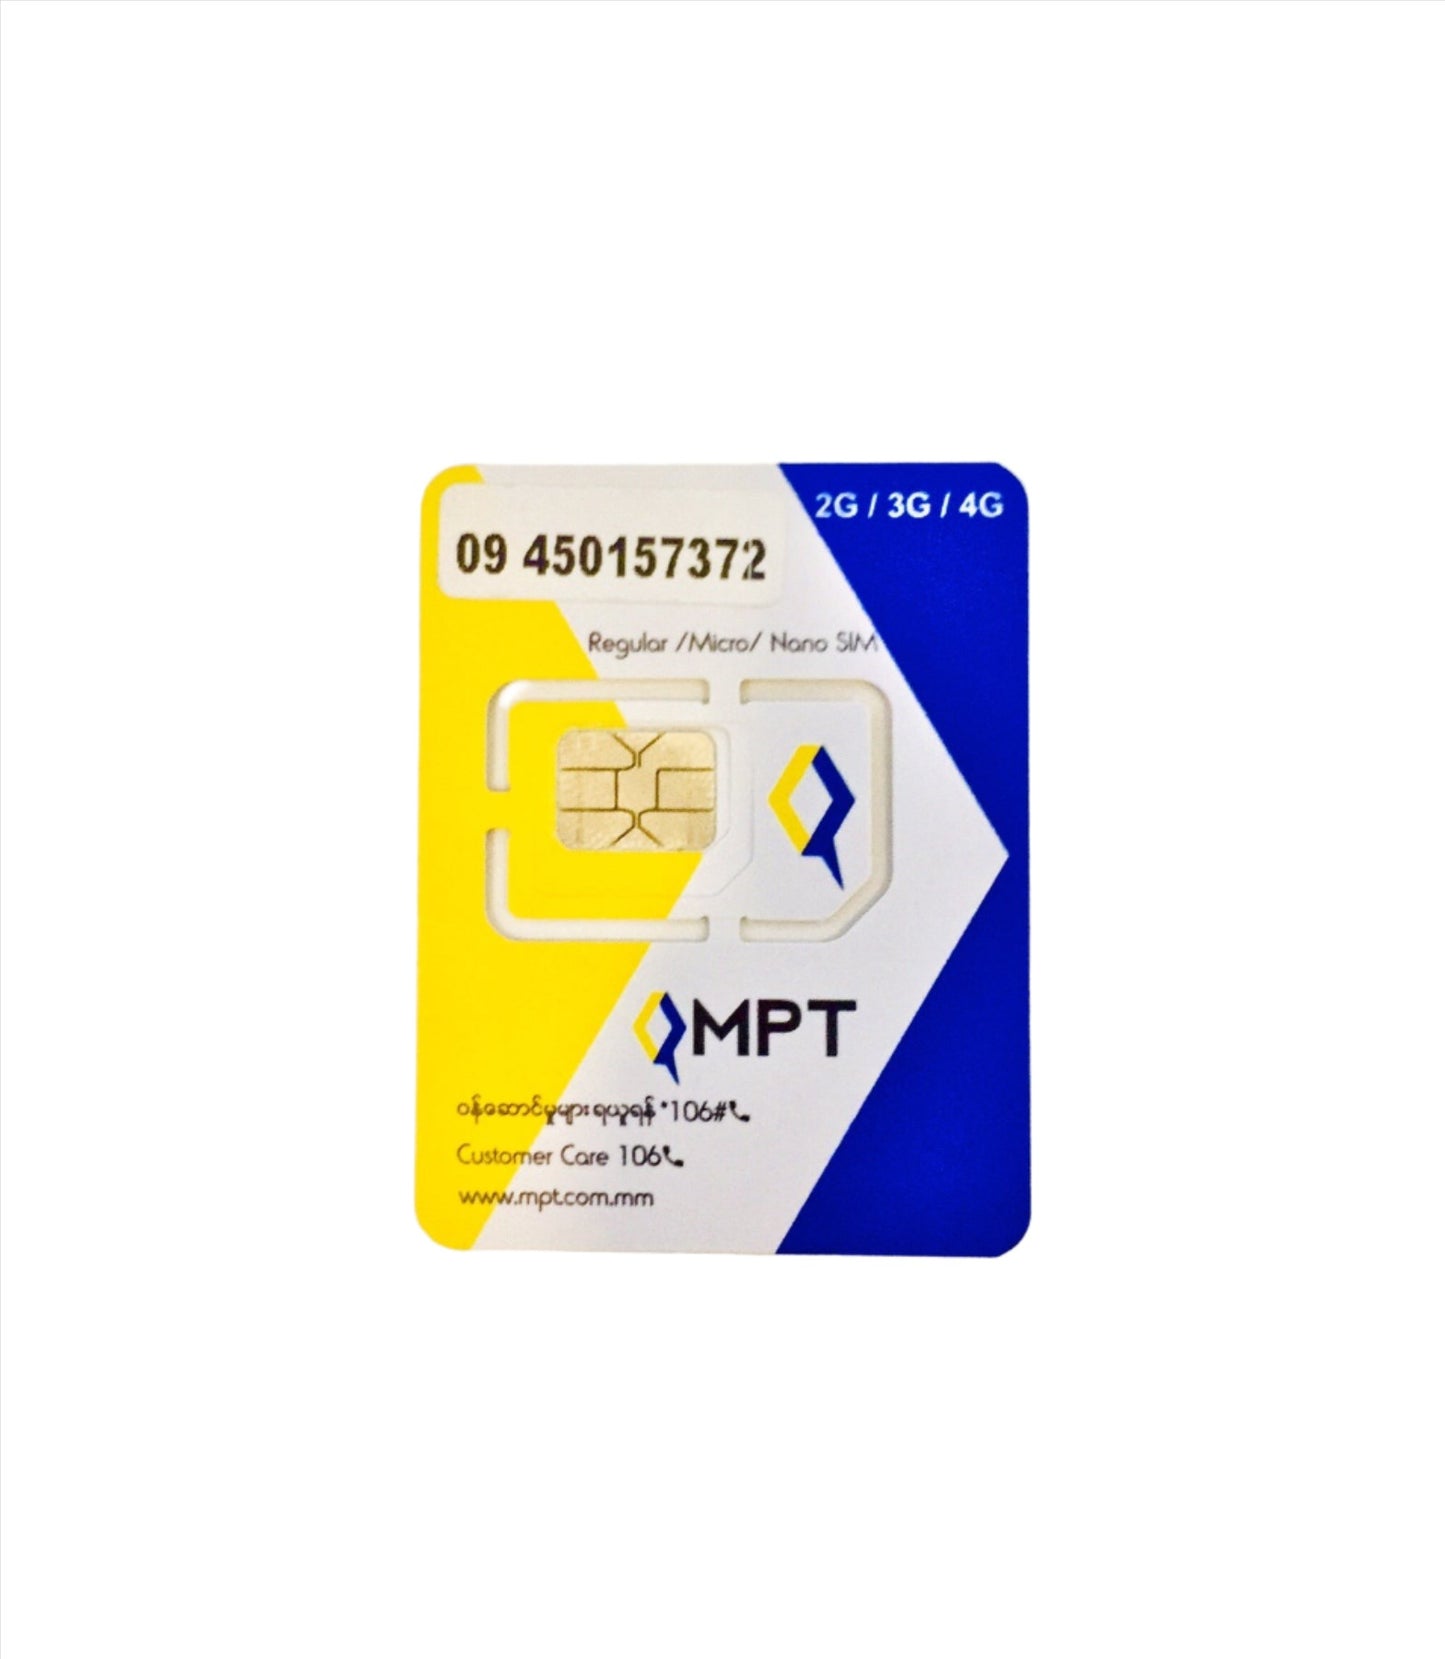 MPT SIM CARD